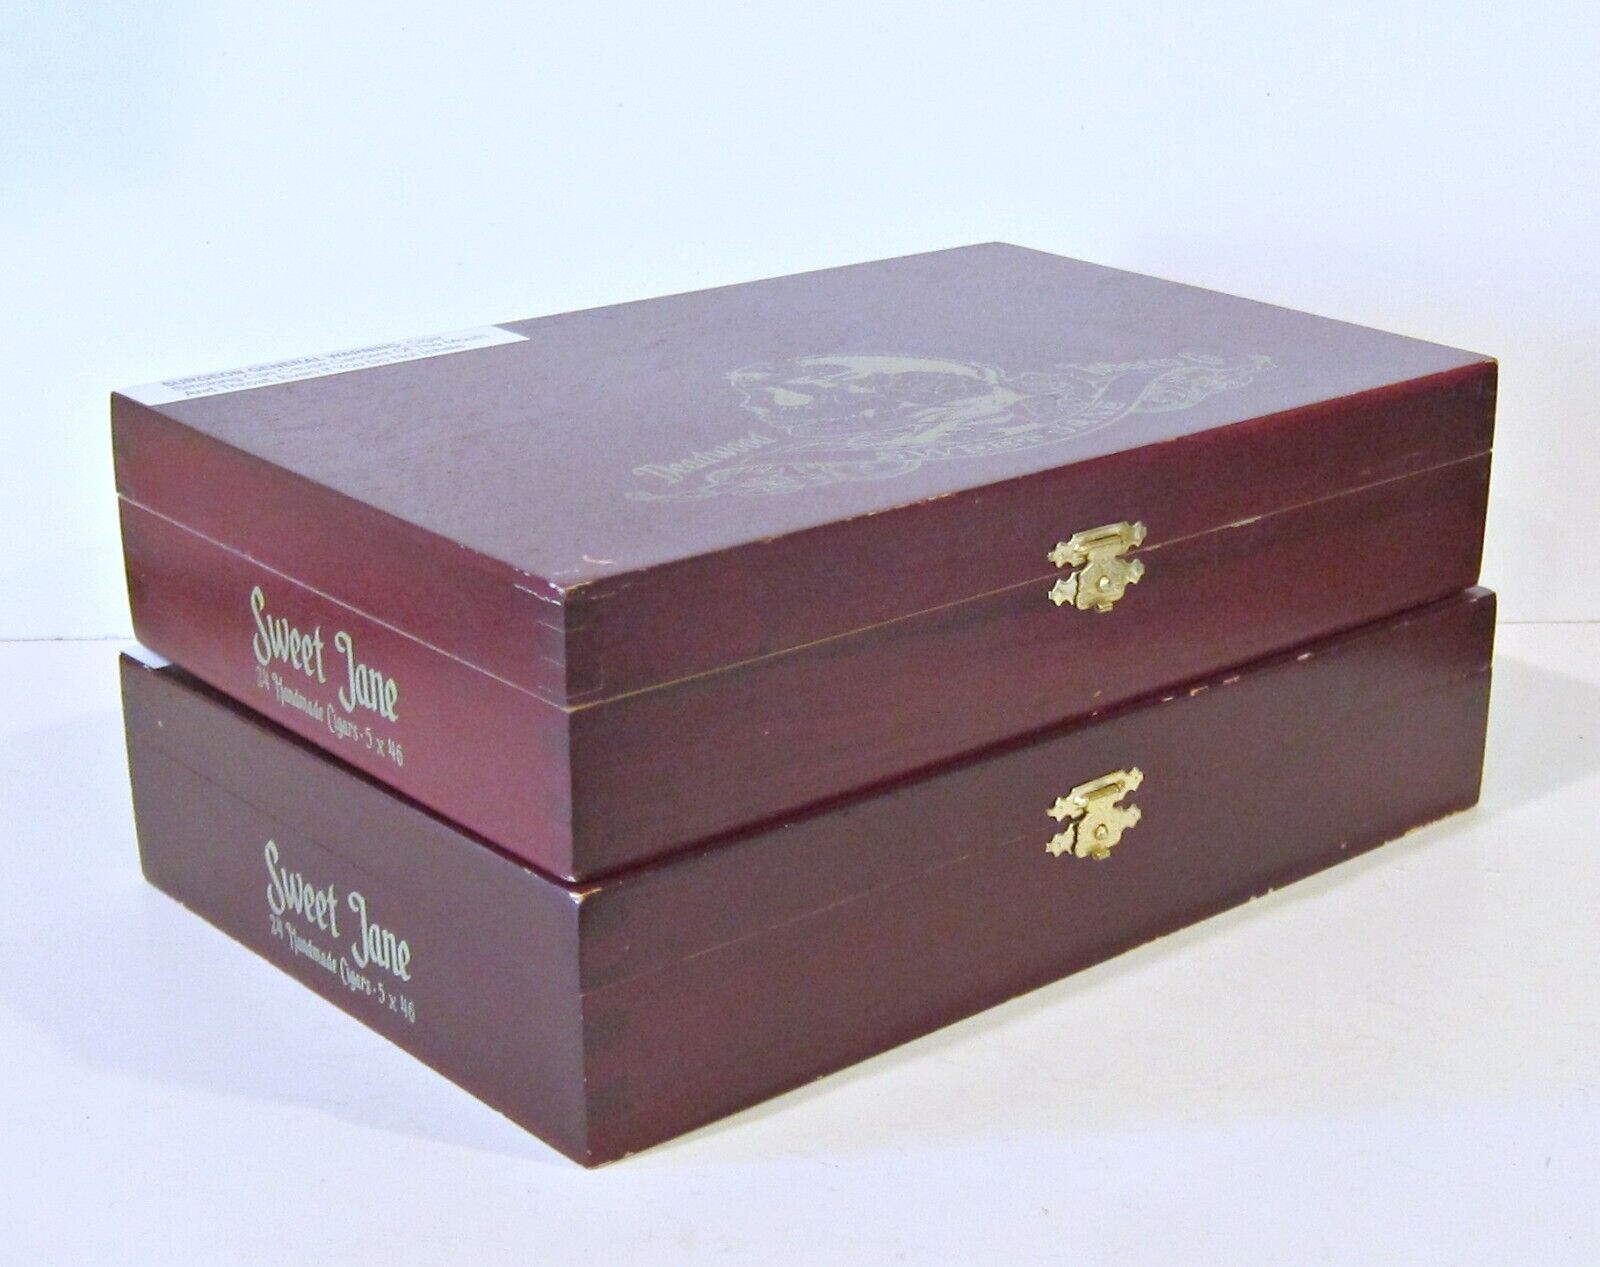 2 SWEET JANE EMPTY WOODEN CIGAR BOXES by Deadwood